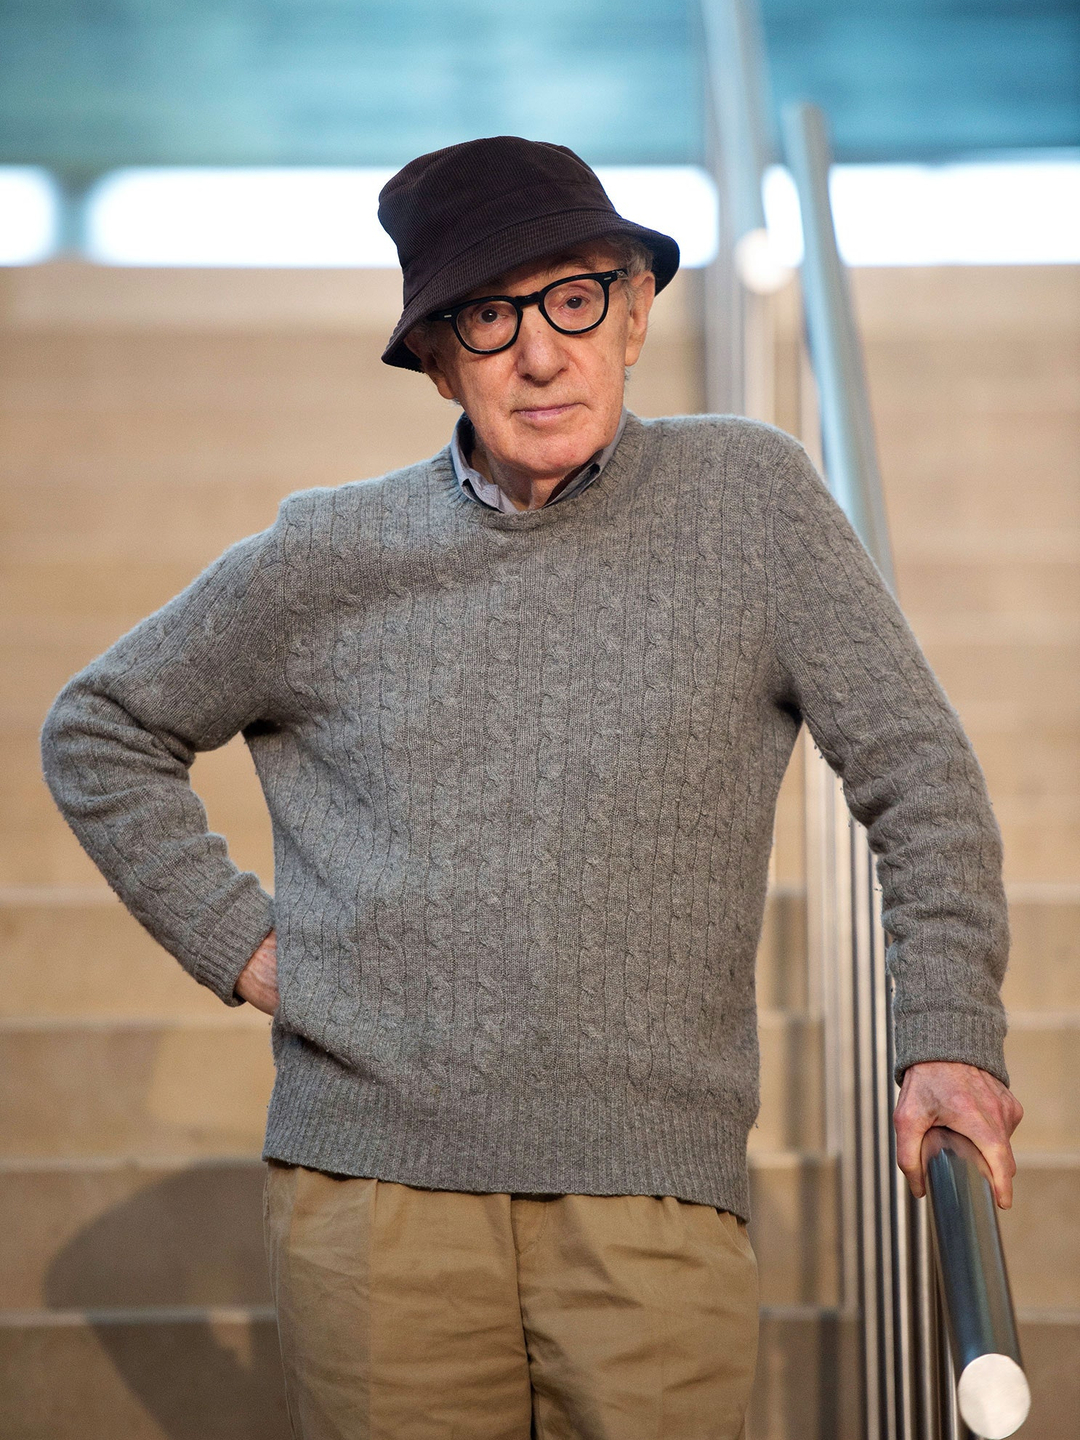 Woody Allen biography